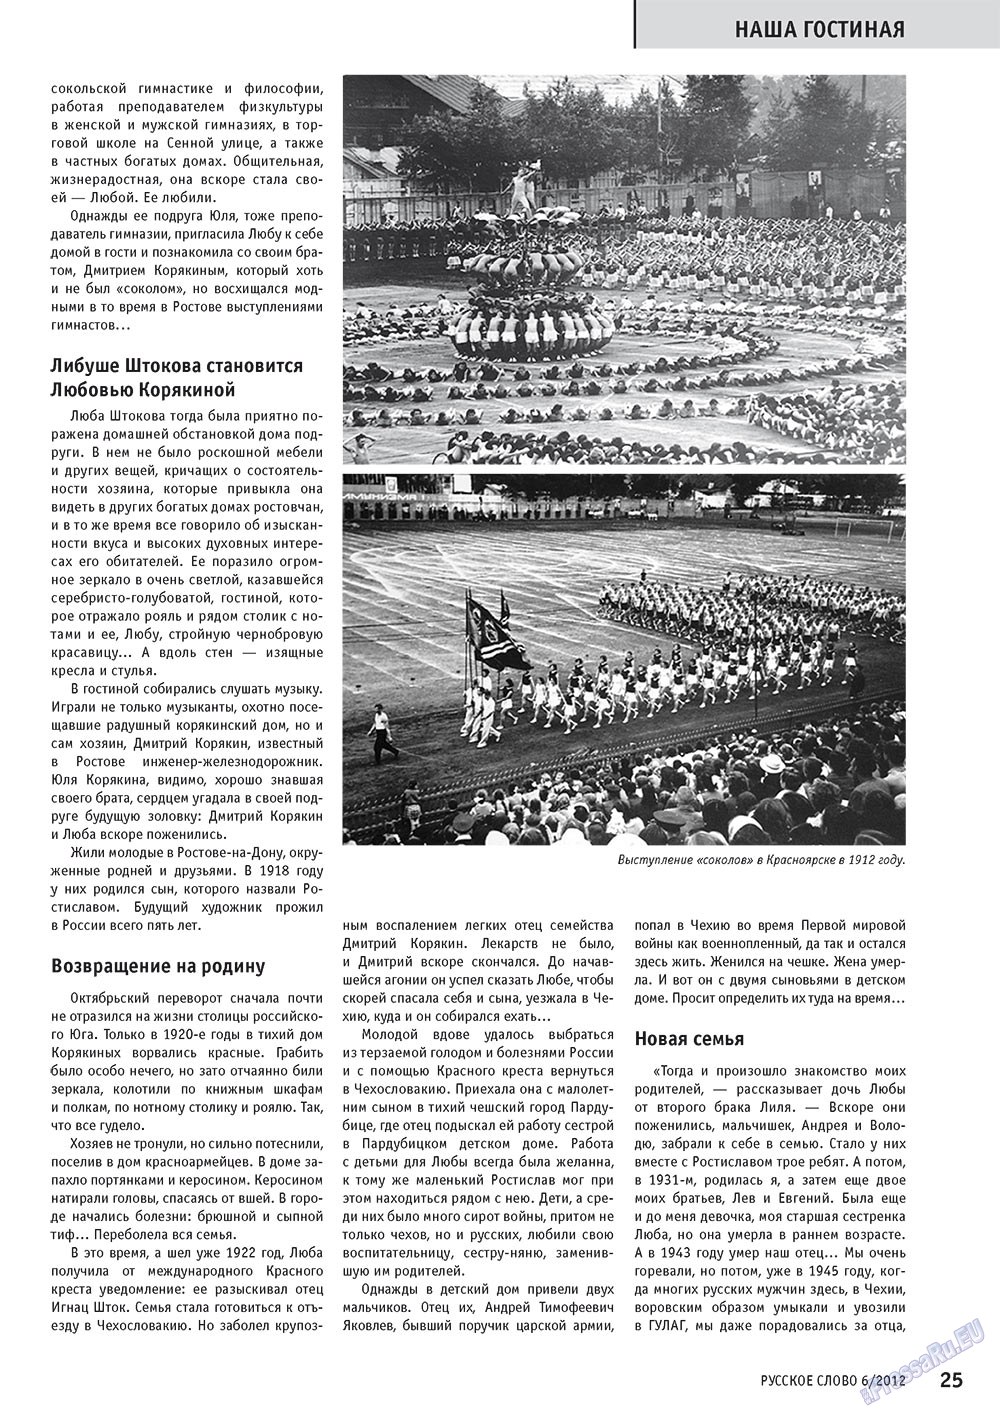 Русское слово, журнал. 2012 №6 стр.25